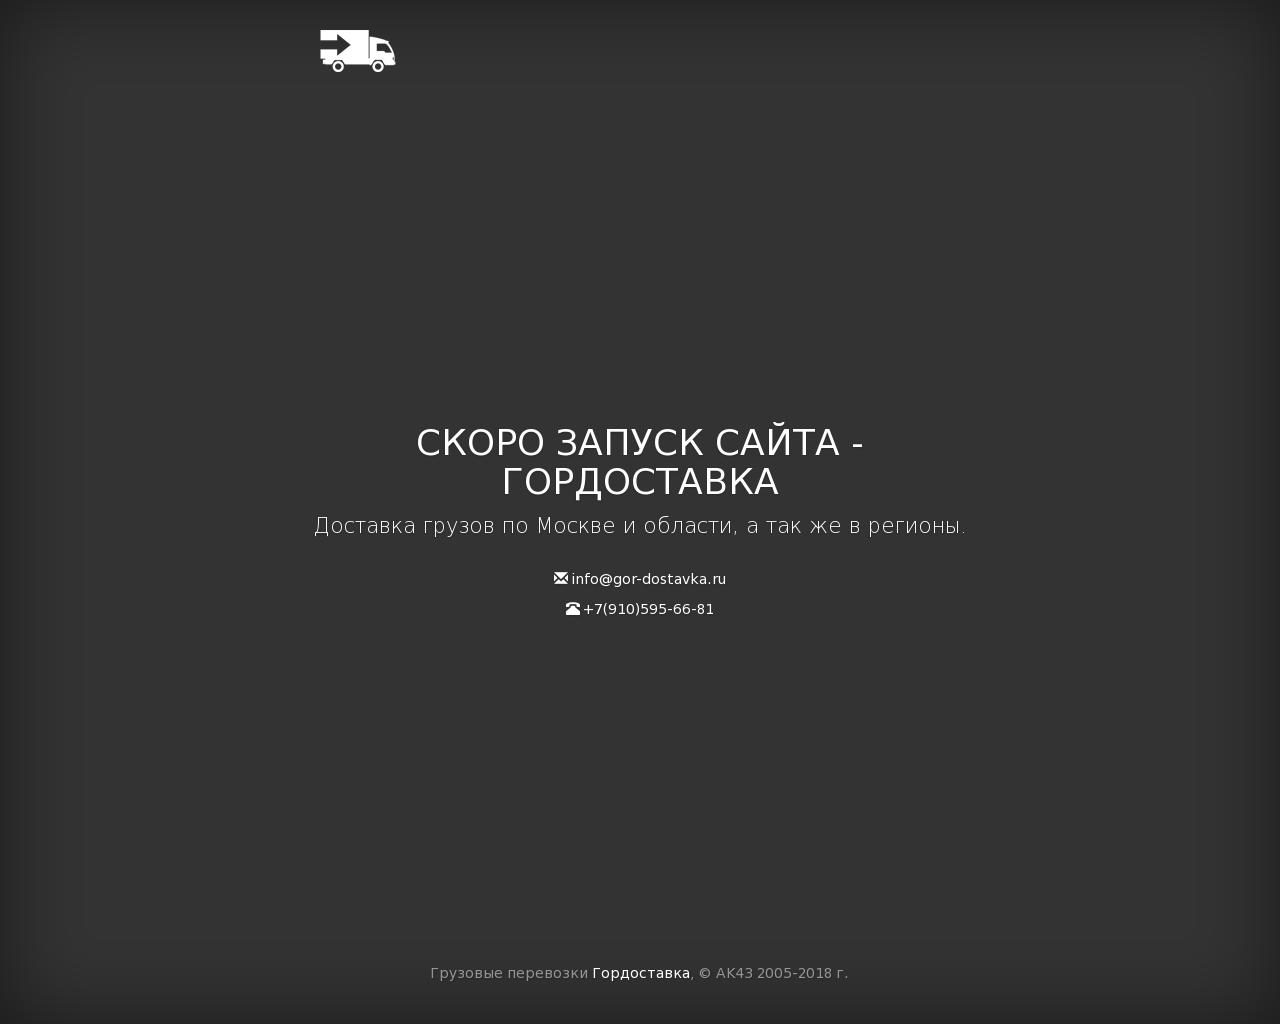 Изображение сайта gor-dostavka.ru в разрешении 1280x1024